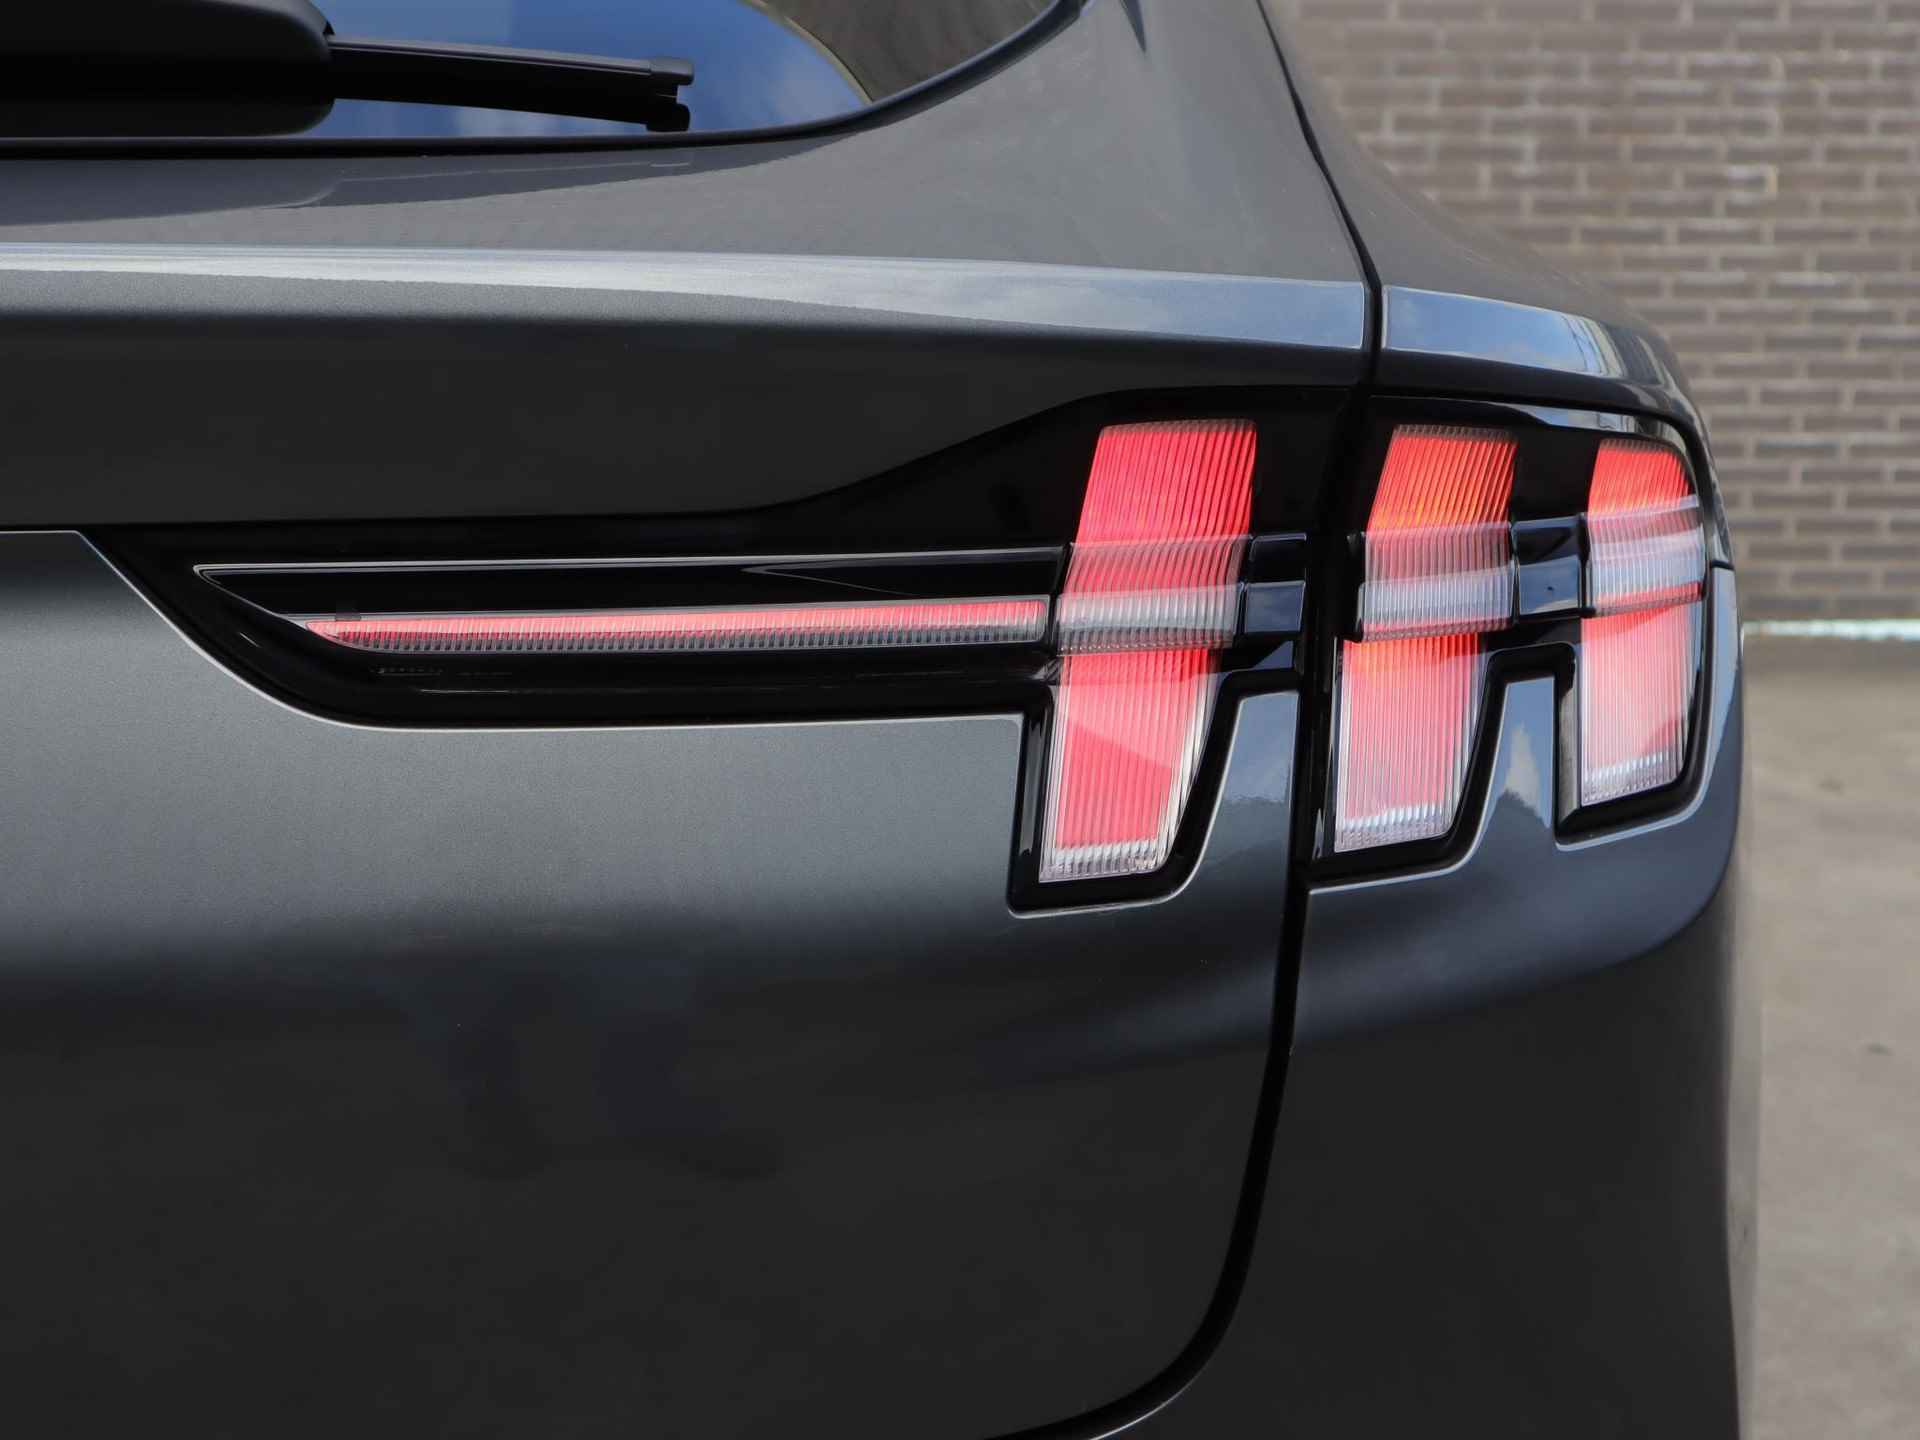 Ford Mustang Mach-E 98kWh Extended RWD 294pk | 12% bijtelling | Glazen dak | Technology + pakket | B&O Audio | Adaptieve cruise control | 18inch lichtmetalen velgen | Stoel- stuur en voorruitverwarming - 9/60